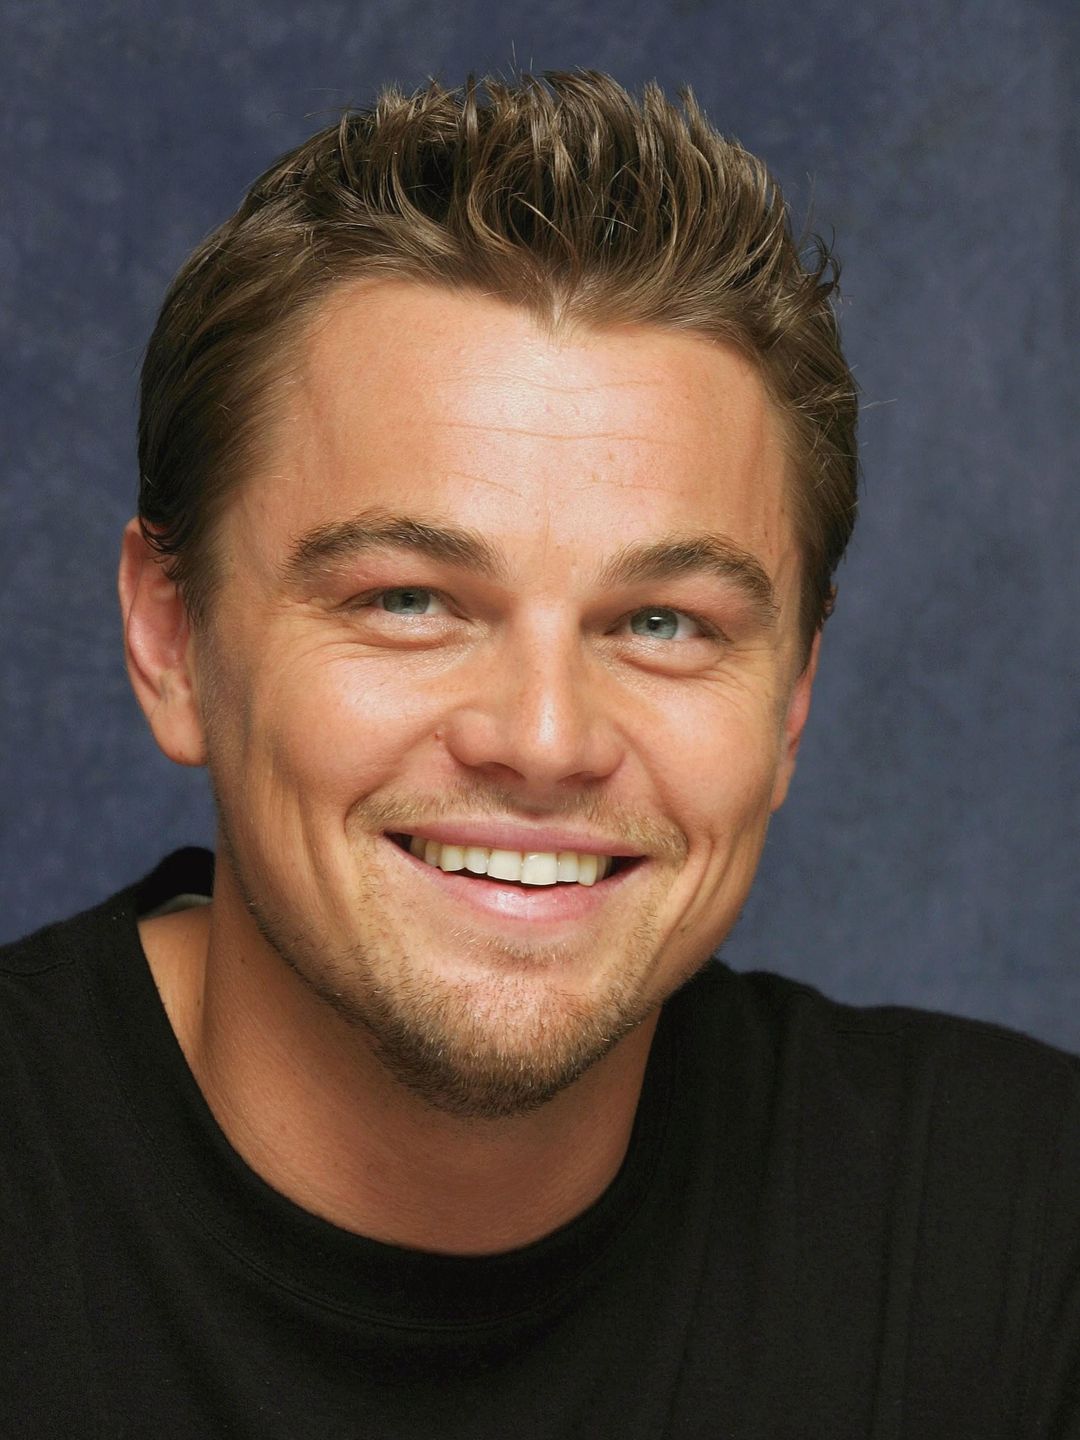 Leonardo DiCaprio his zodiac sign